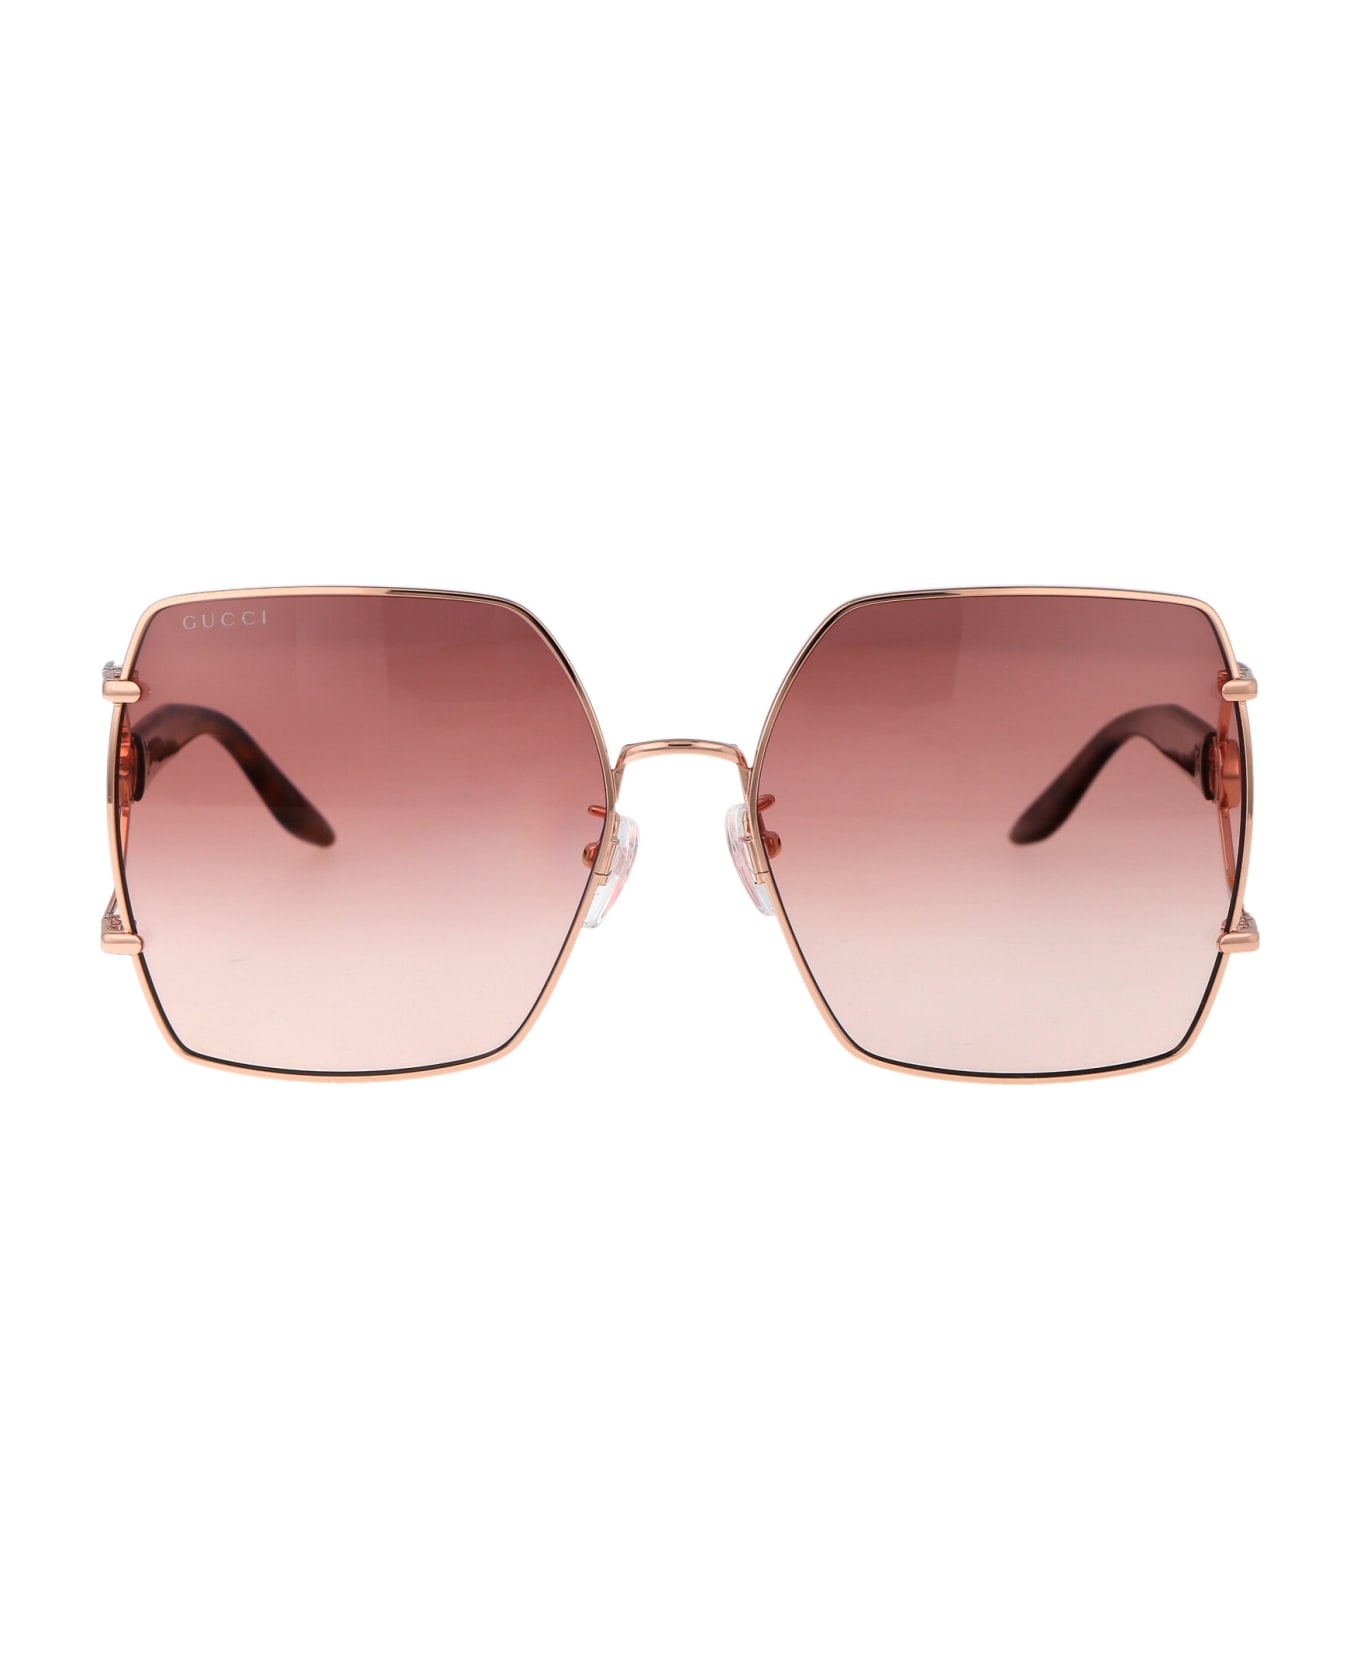 Gucci Eyewear Gg1564sa Sunglasses - 004 GOLD HAVANA RED